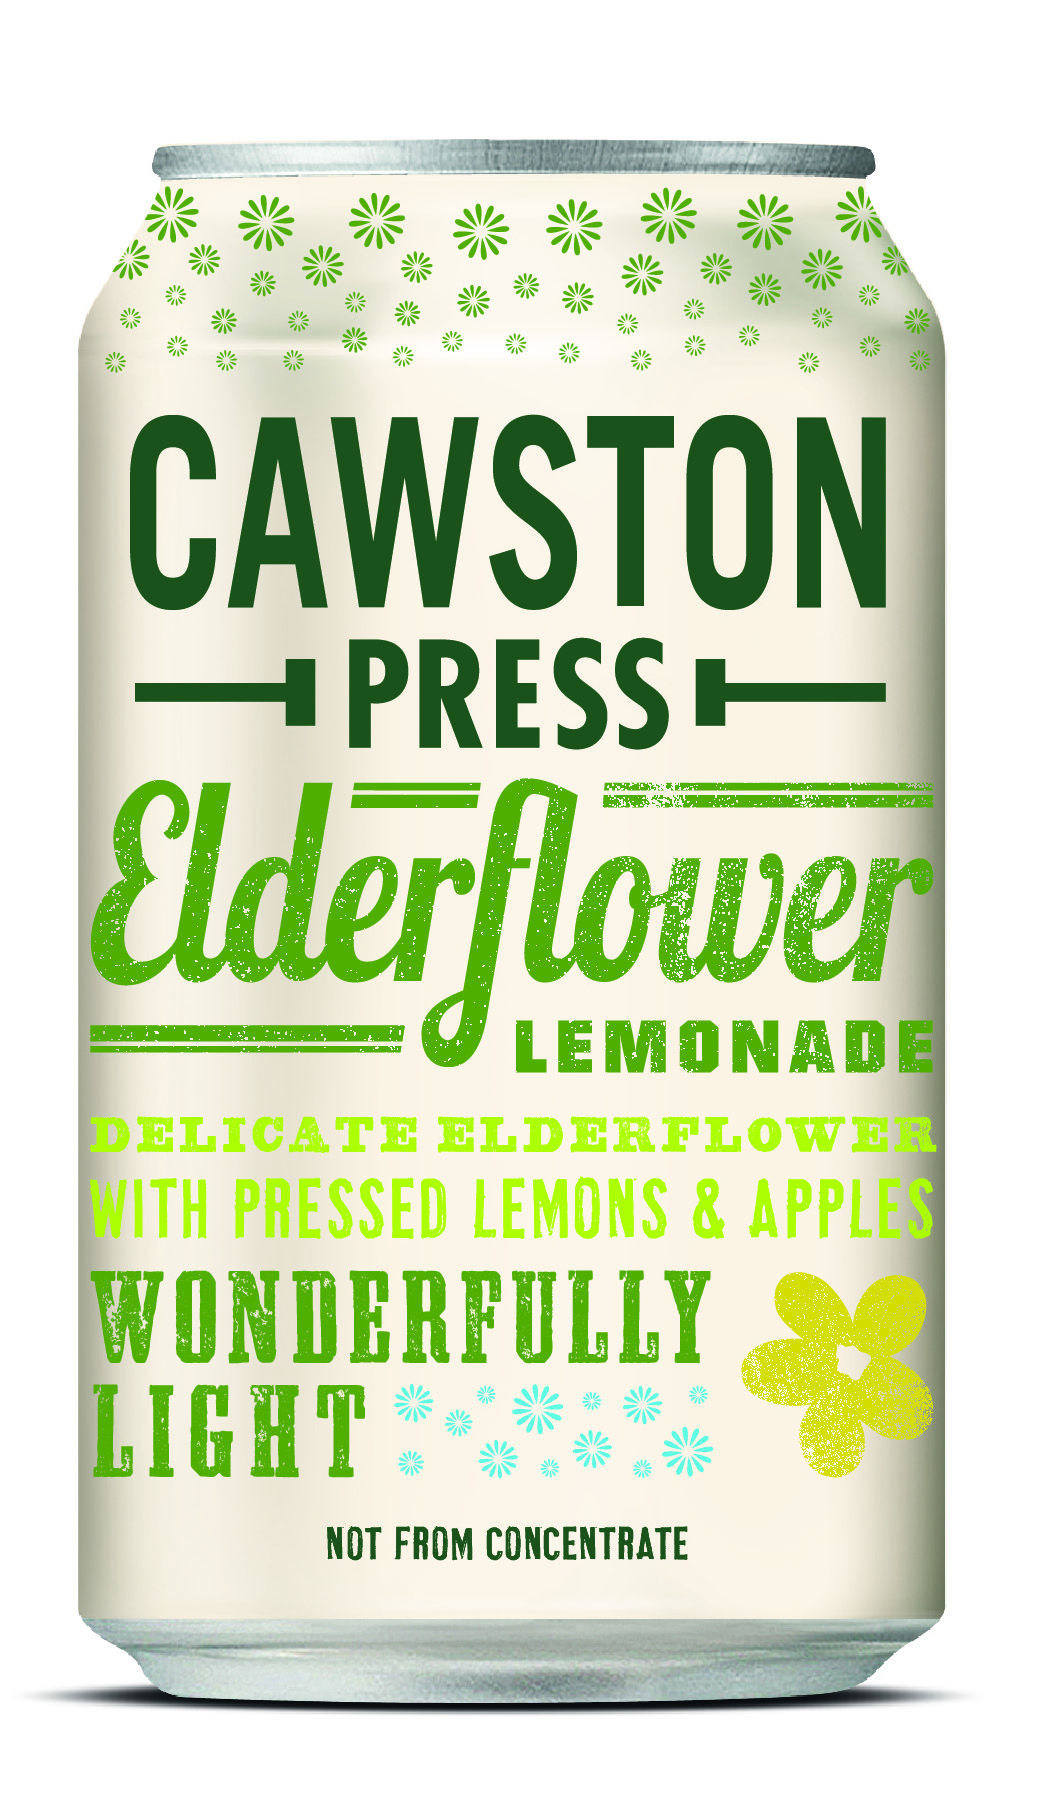 Sparkling Elderflower Lemonade Multipack 6x4